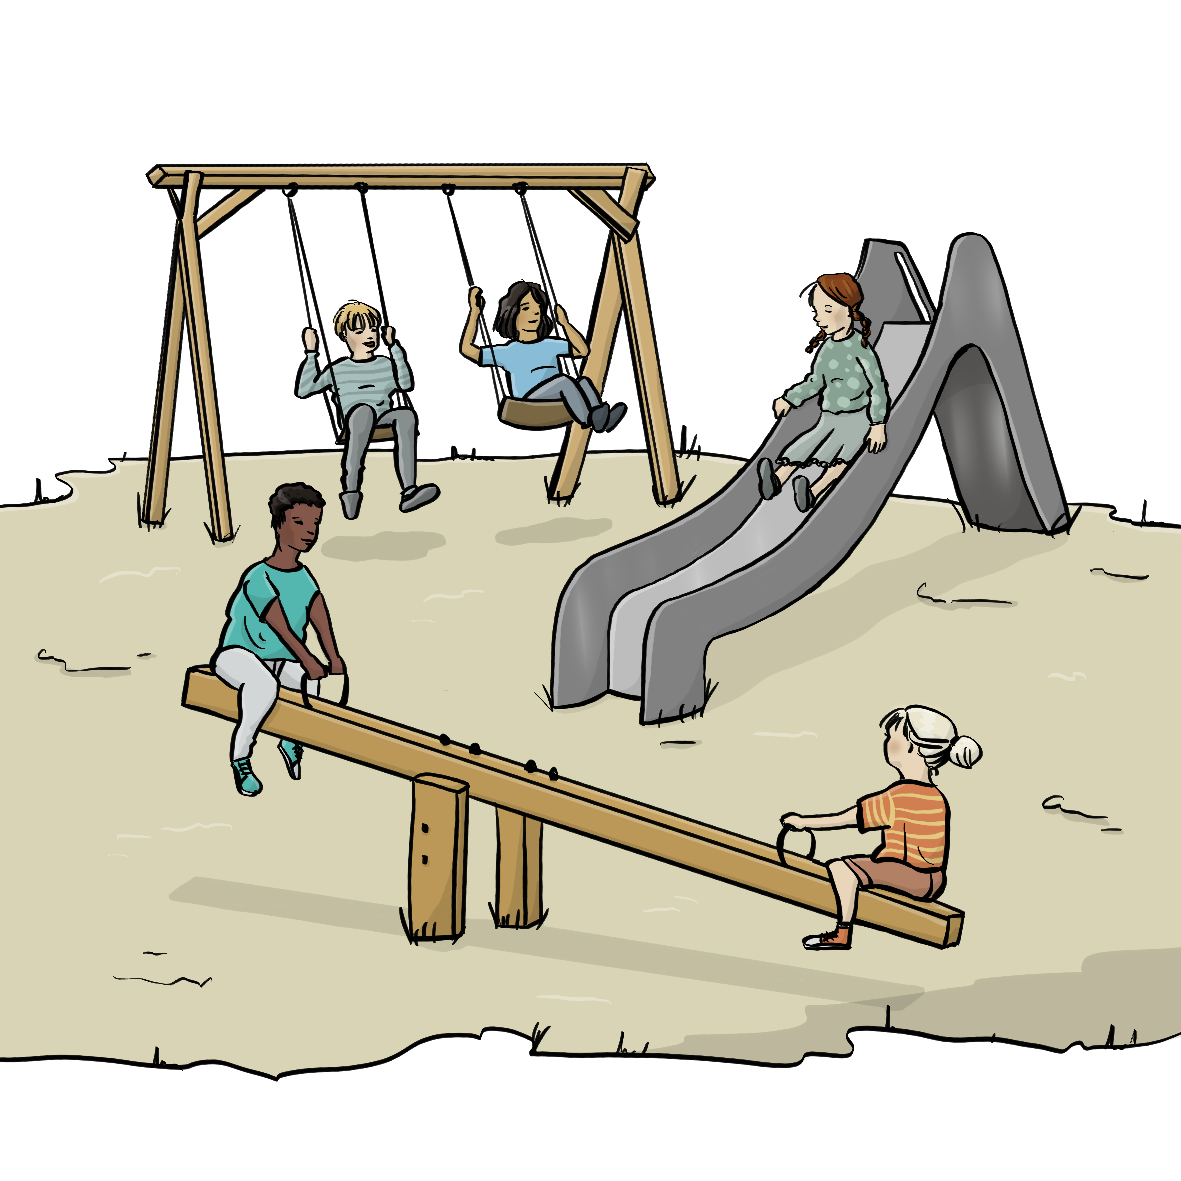 Eine Sandfläche mit Spielgeräten. Zwei Kinder schaukeln auf einer Schaukel, ein Kind rutscht eine Rutsche hinunter und zwei Kinder wippen auf einer Wippe. 